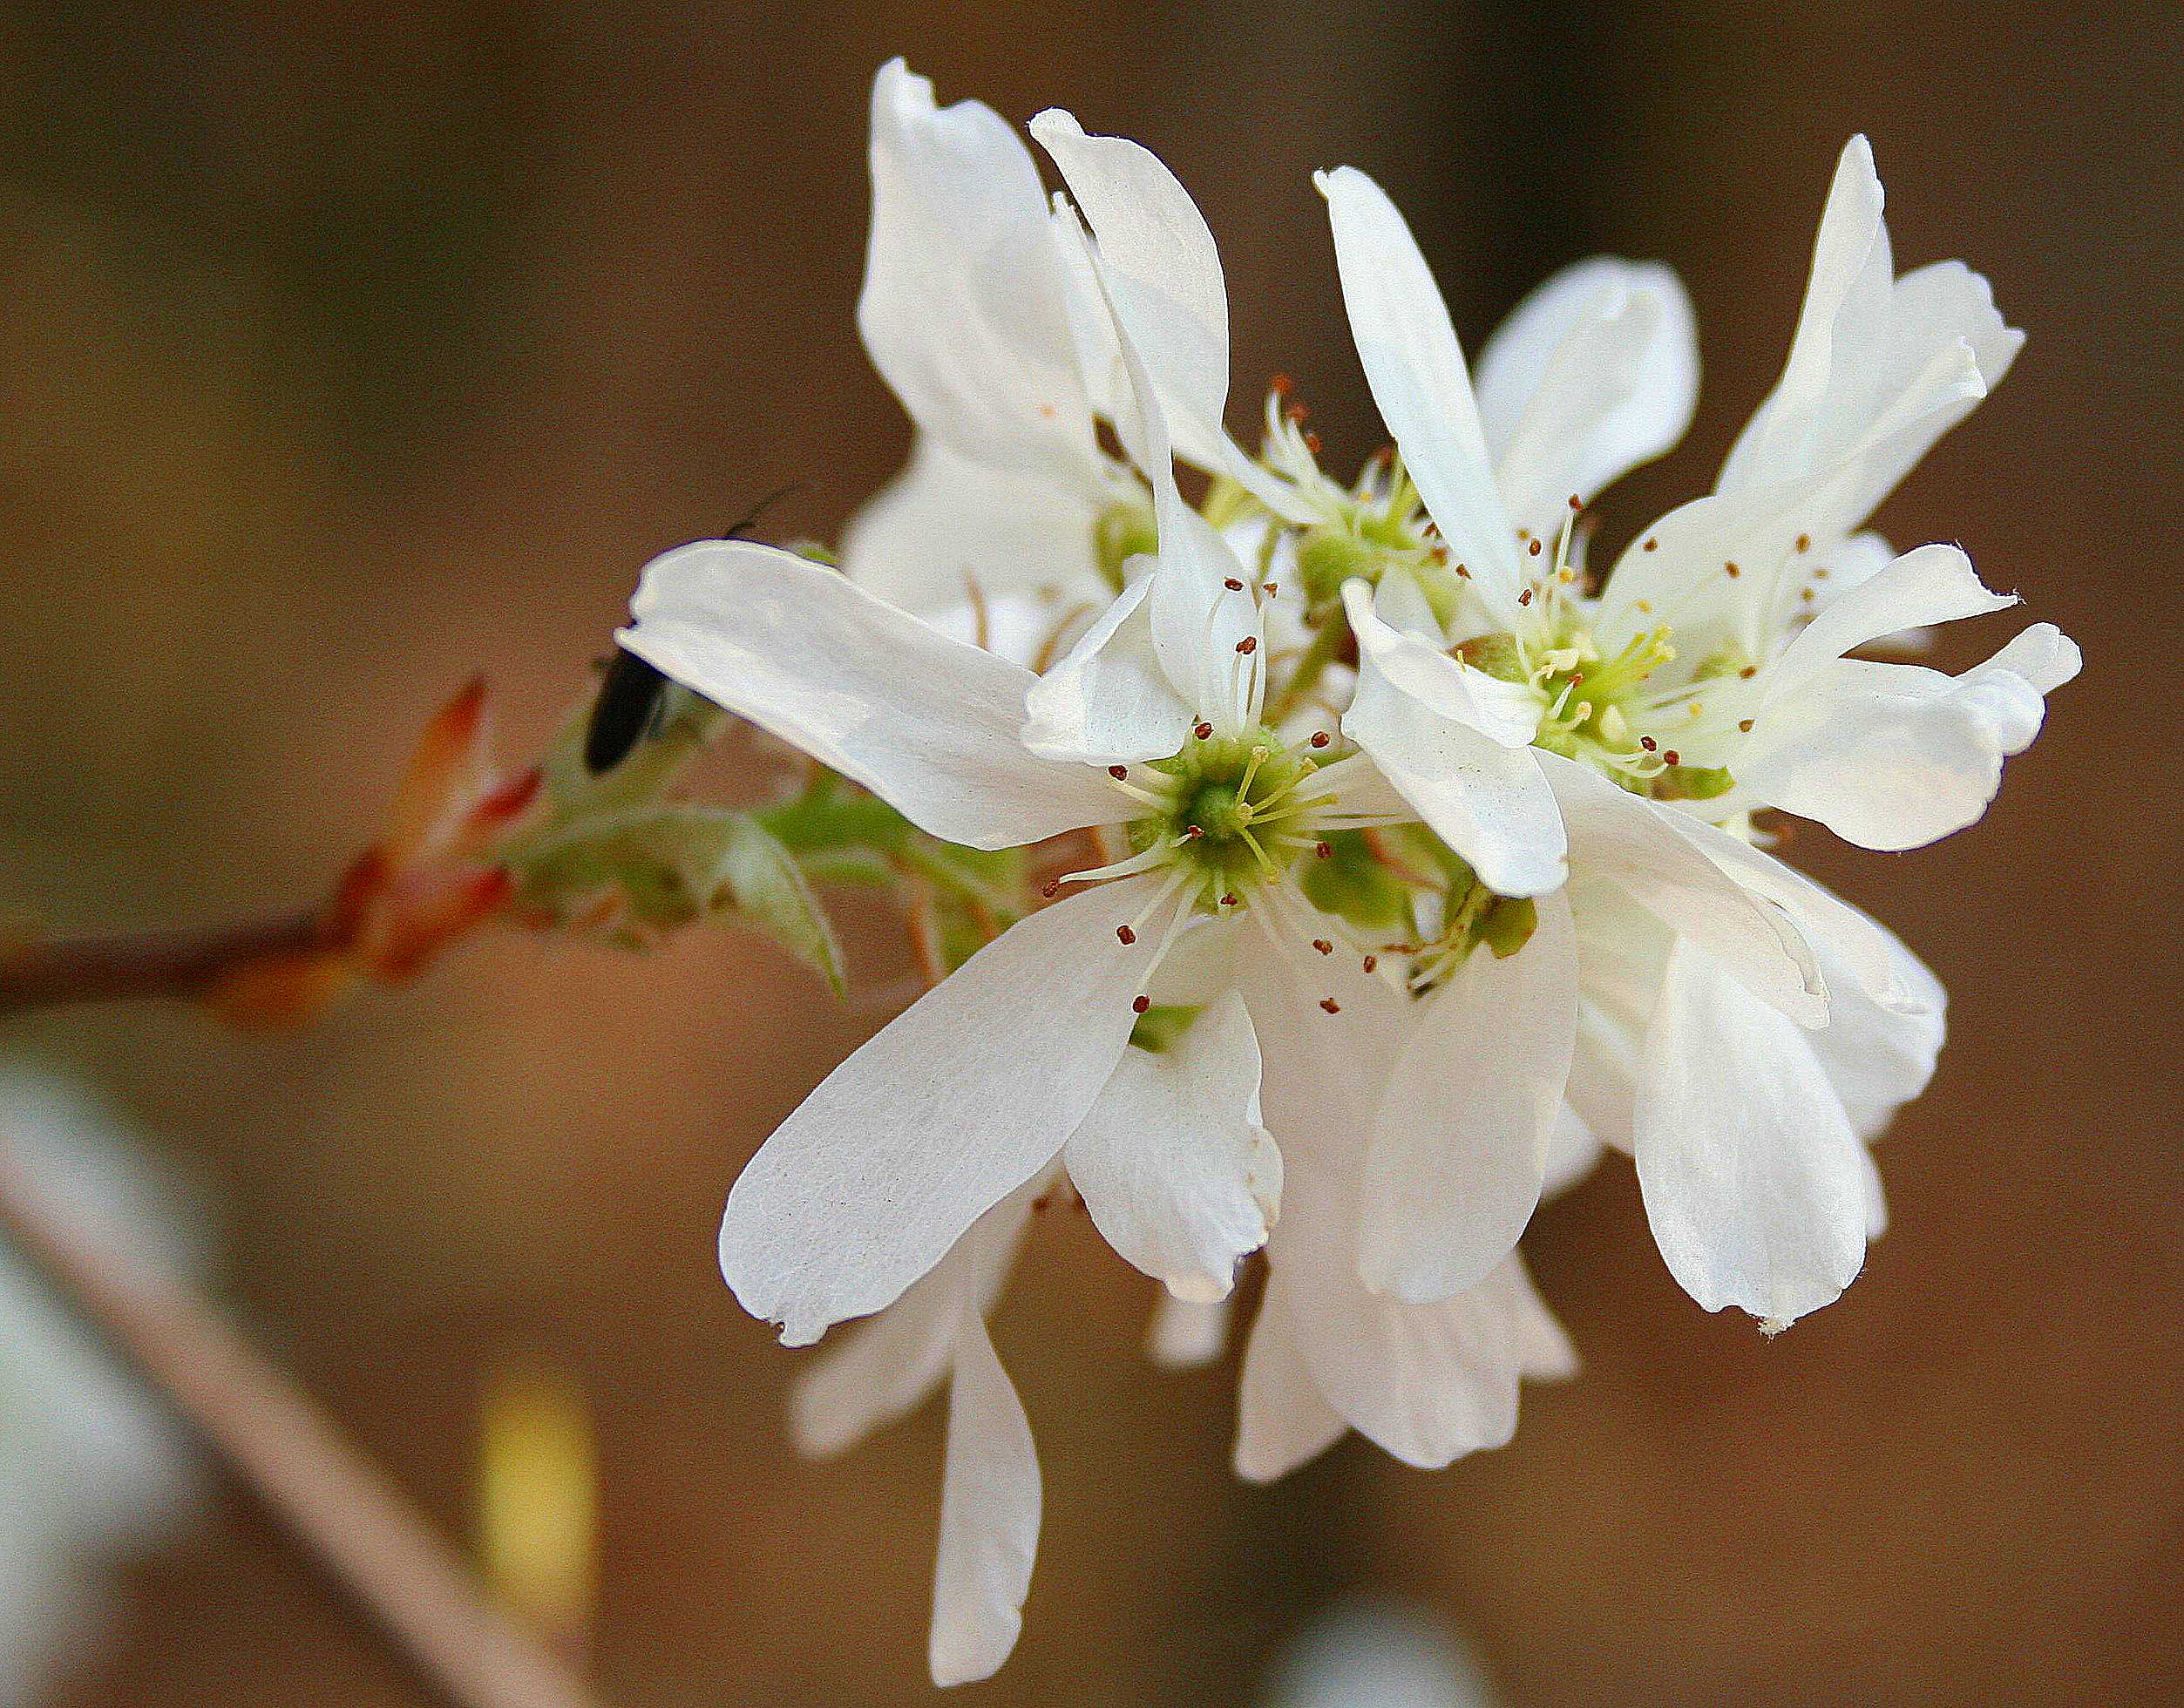 Multi-petaled white flower on a delicate stem.